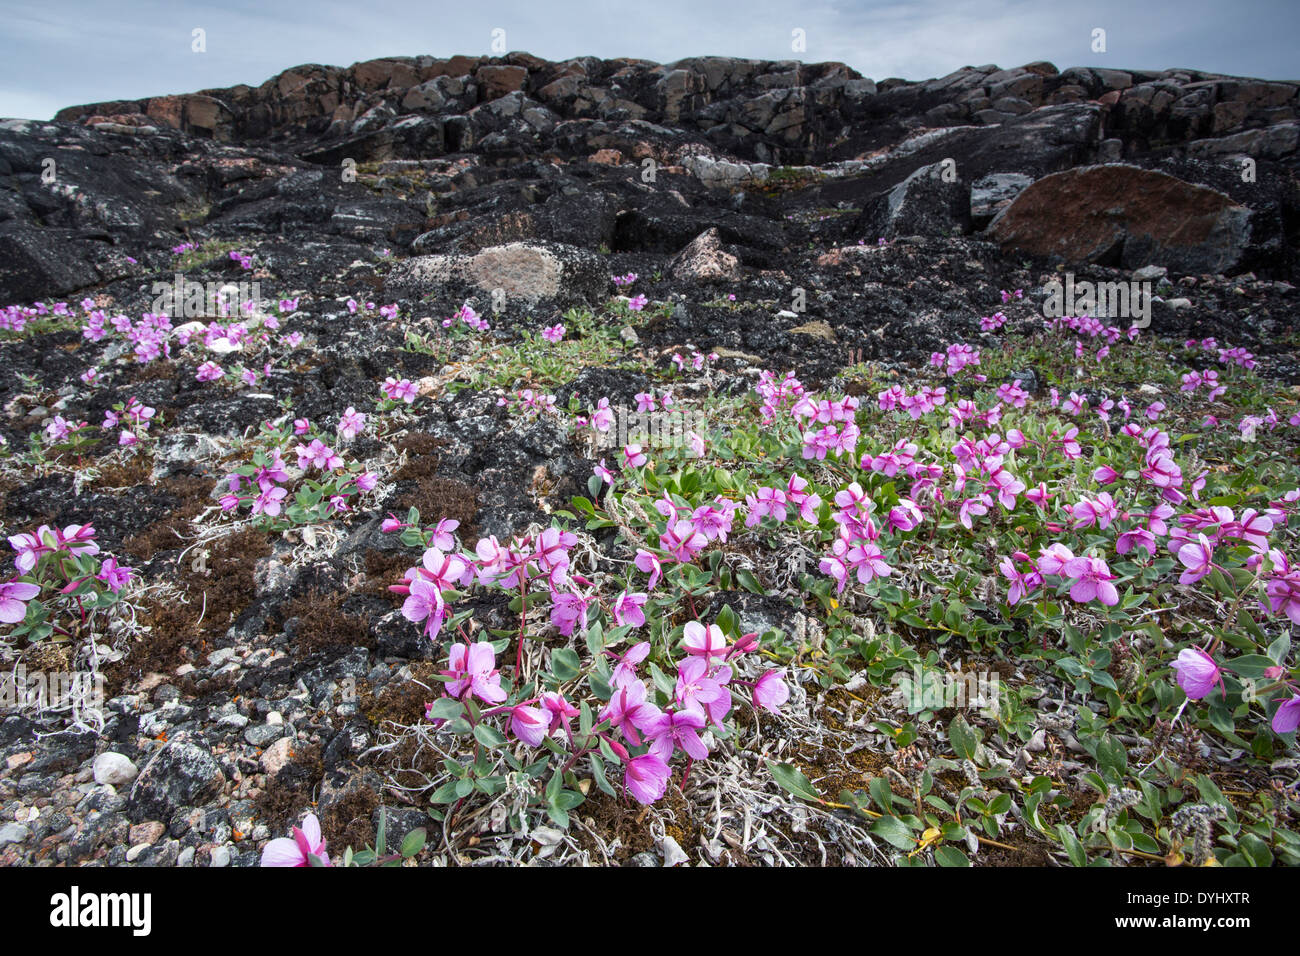 Canada Territoire du Nunavut Repulse Bay épilobe glanduleux (Chamerion latifolium) se développe entre les roches des îles le long de la toundra Banque D'Images